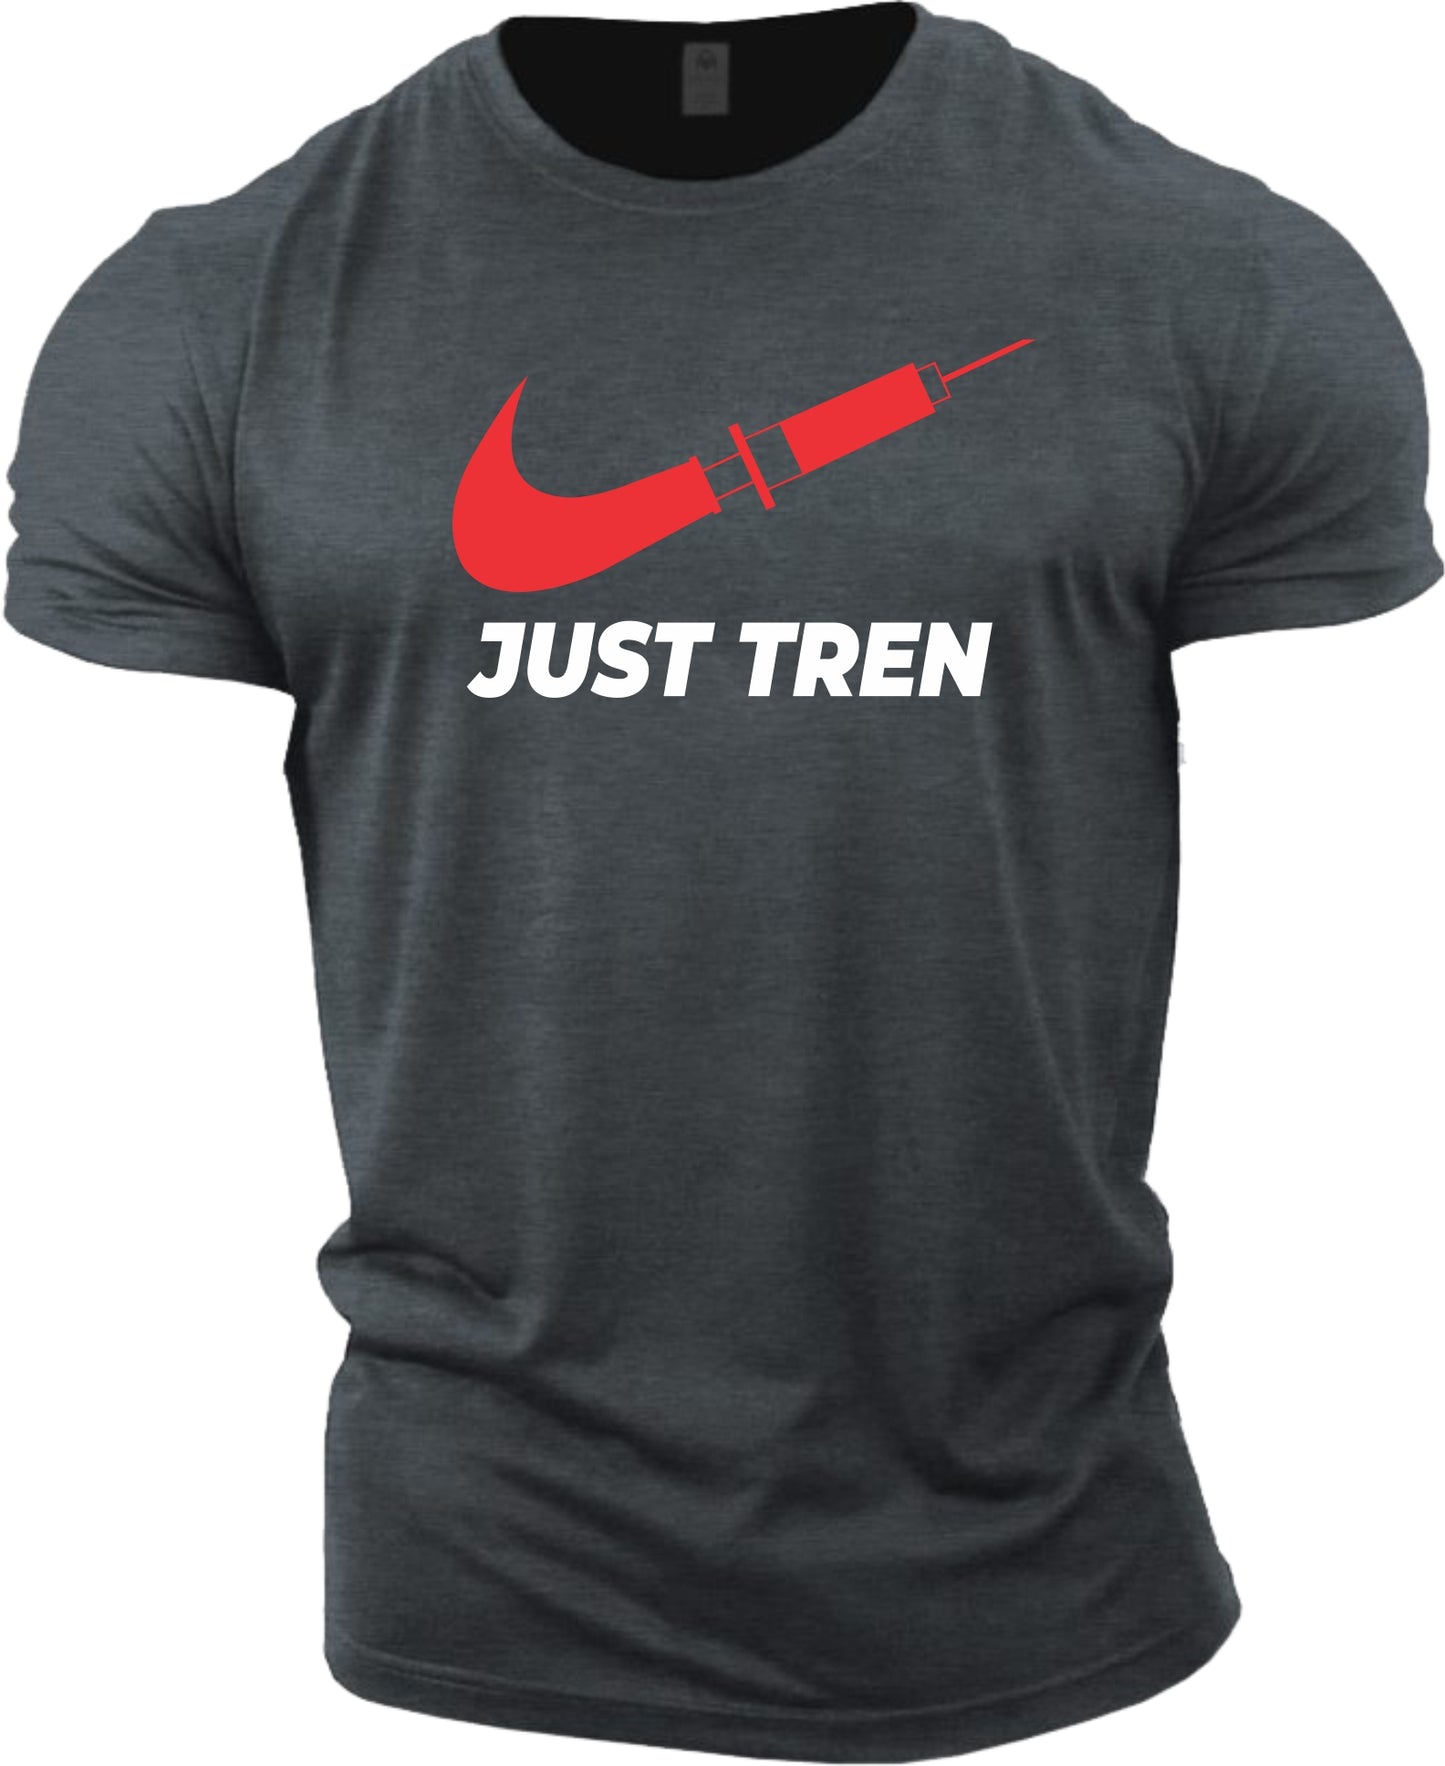 Gym T-shirt (Just Tren)